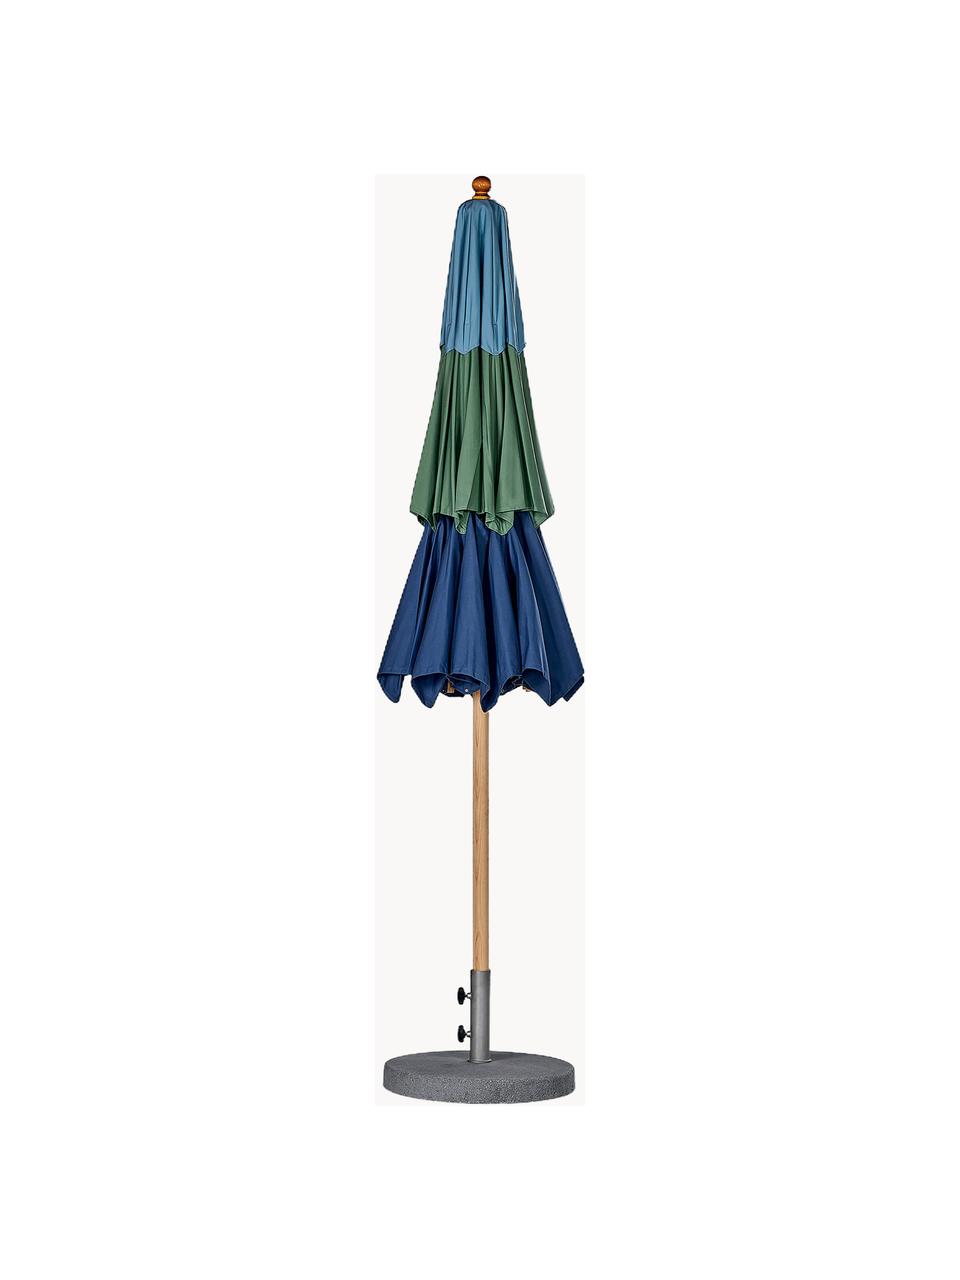 Handfertigter Sonnenschirm Klassiker mit Flaschenzug, verschiedene Größen, Blautöne, Dunkelgrün, Helles Holz, Ø 300 x 273 cm